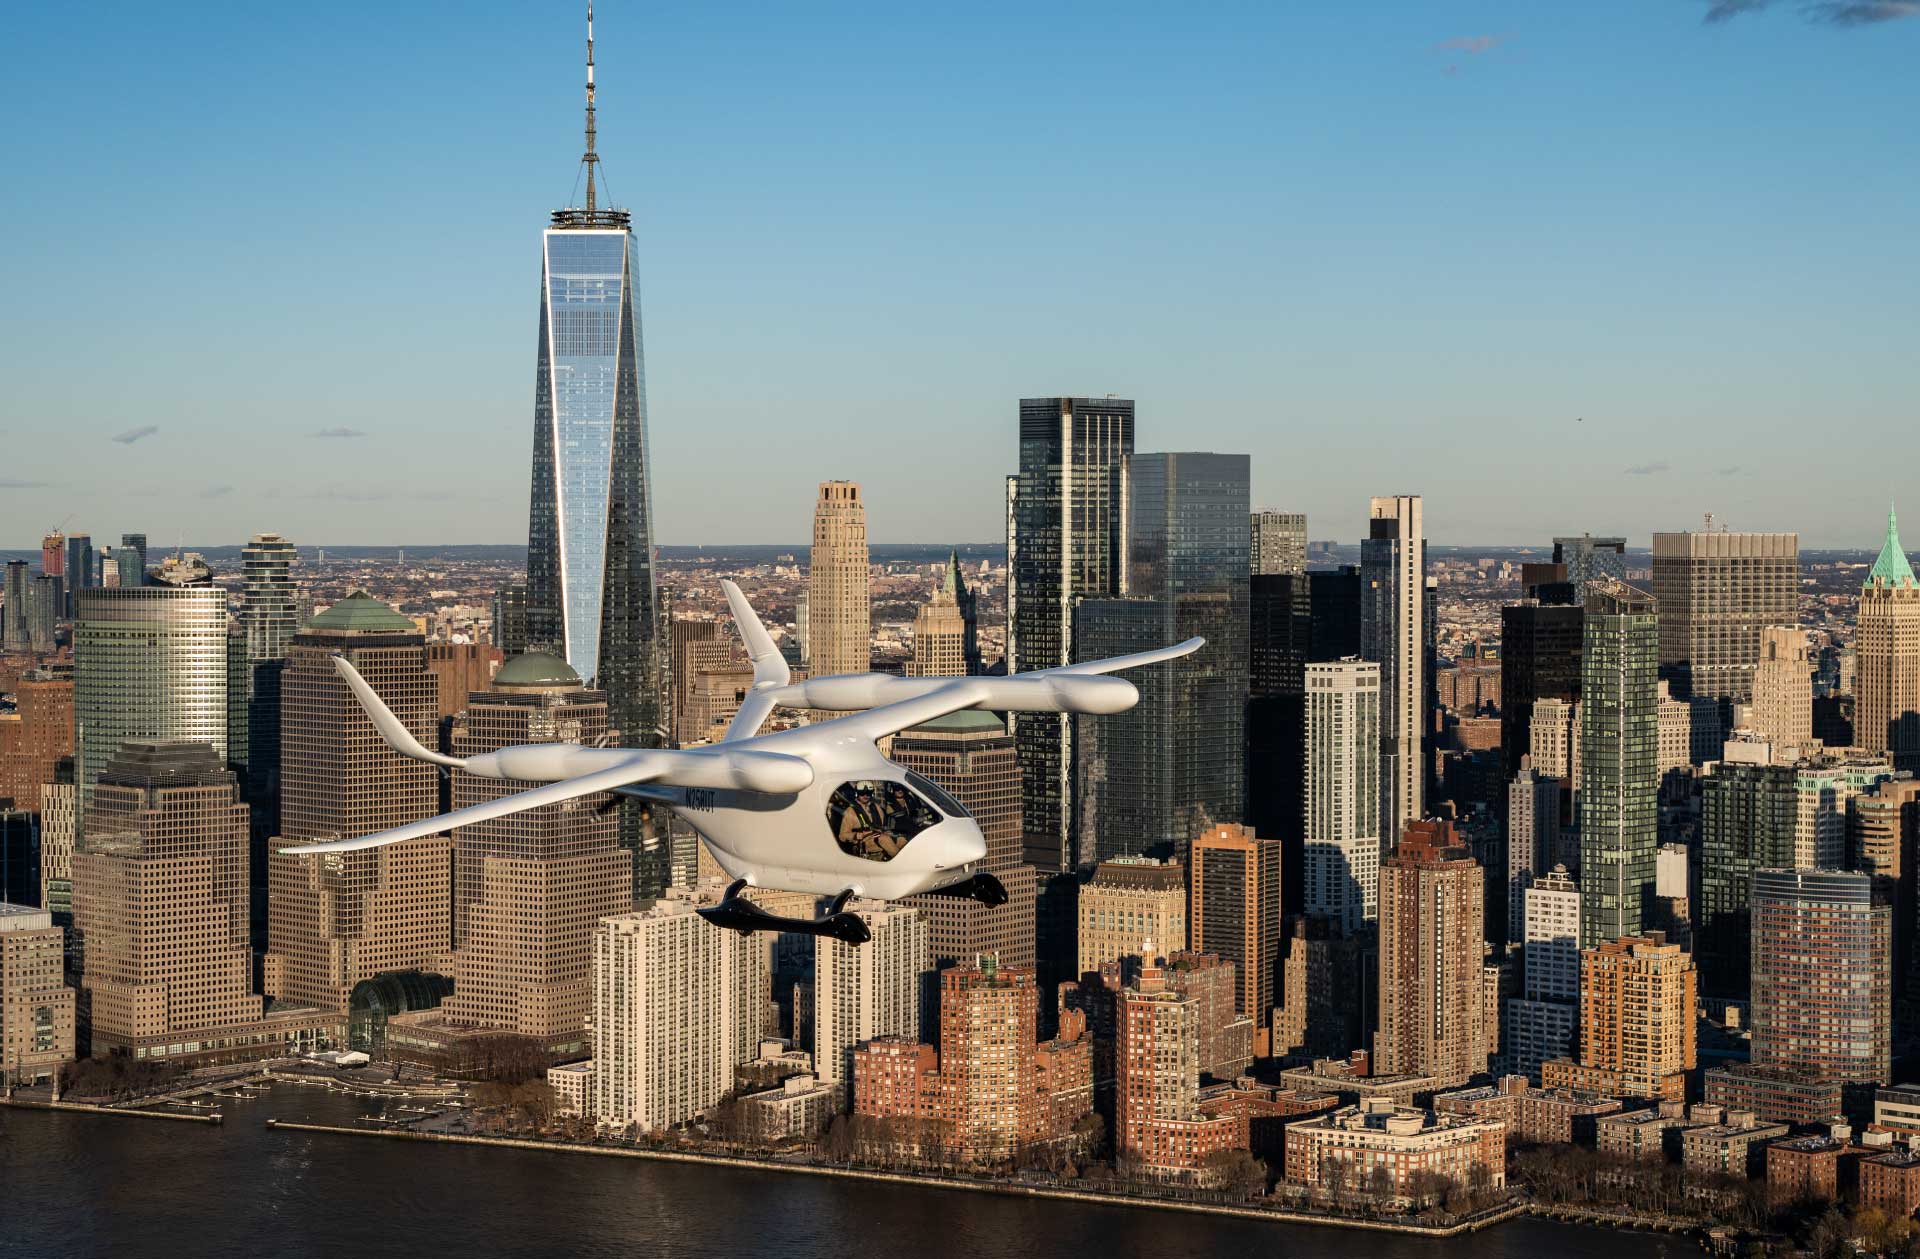 ALIA flying alongside Manhattan